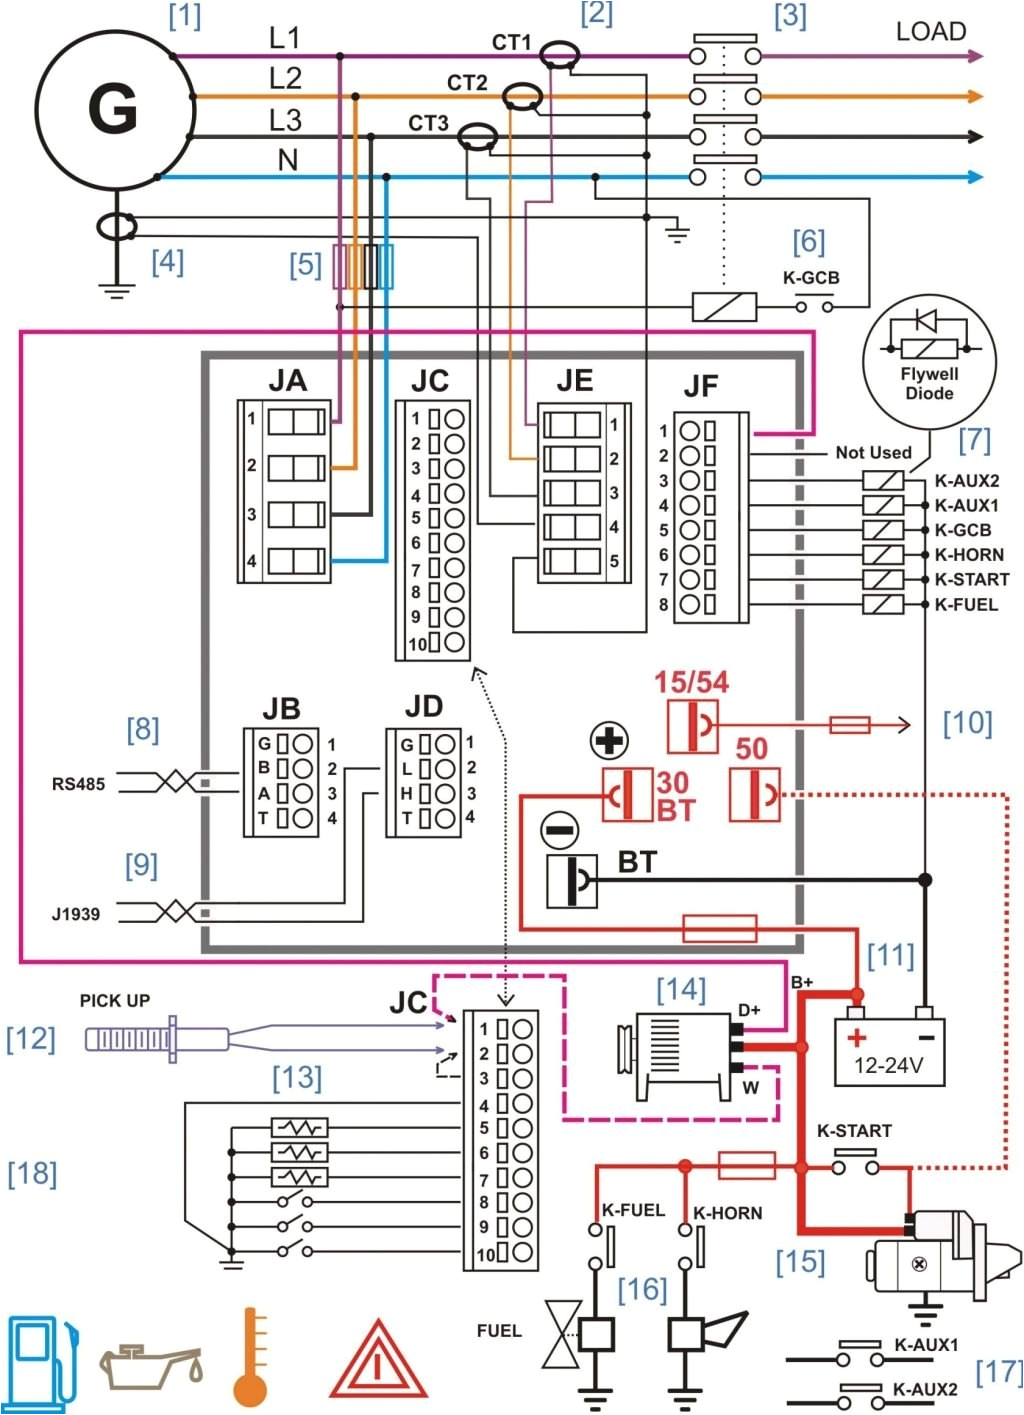 peterbilt 359 headlight wiring diagram wiring diagram valpeterbilt wiring harness wiring diagram list peterbilt 359 headlight